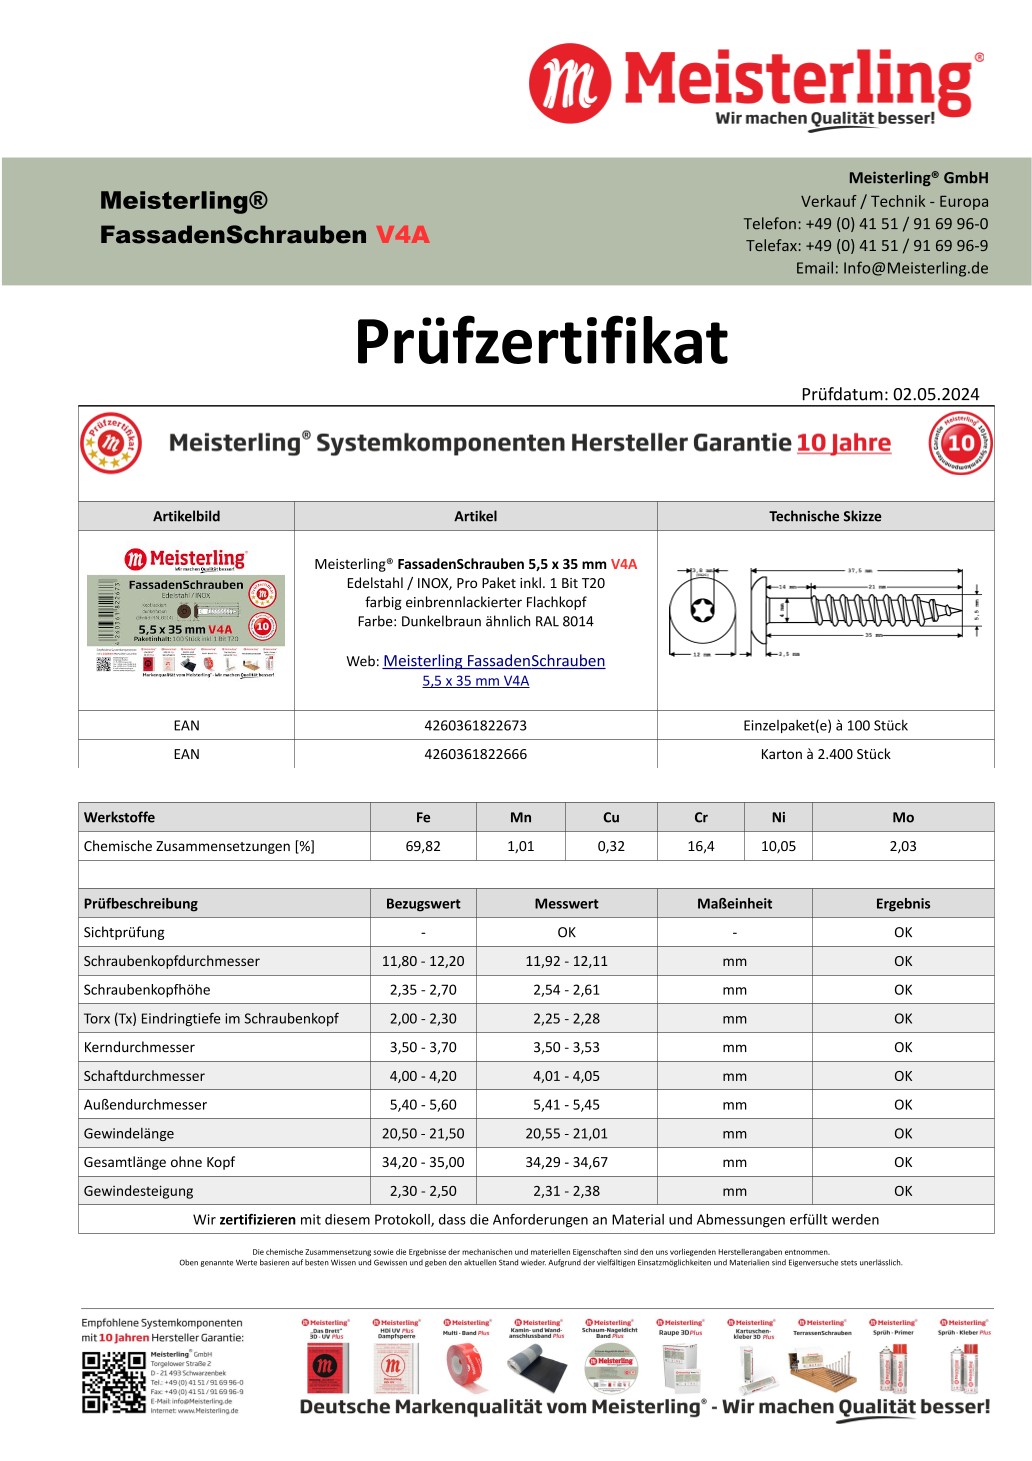 Prüfzertifikat Meisterling® FassadenSchrauben 5,5 x 35 mm V4a dunkelbraun